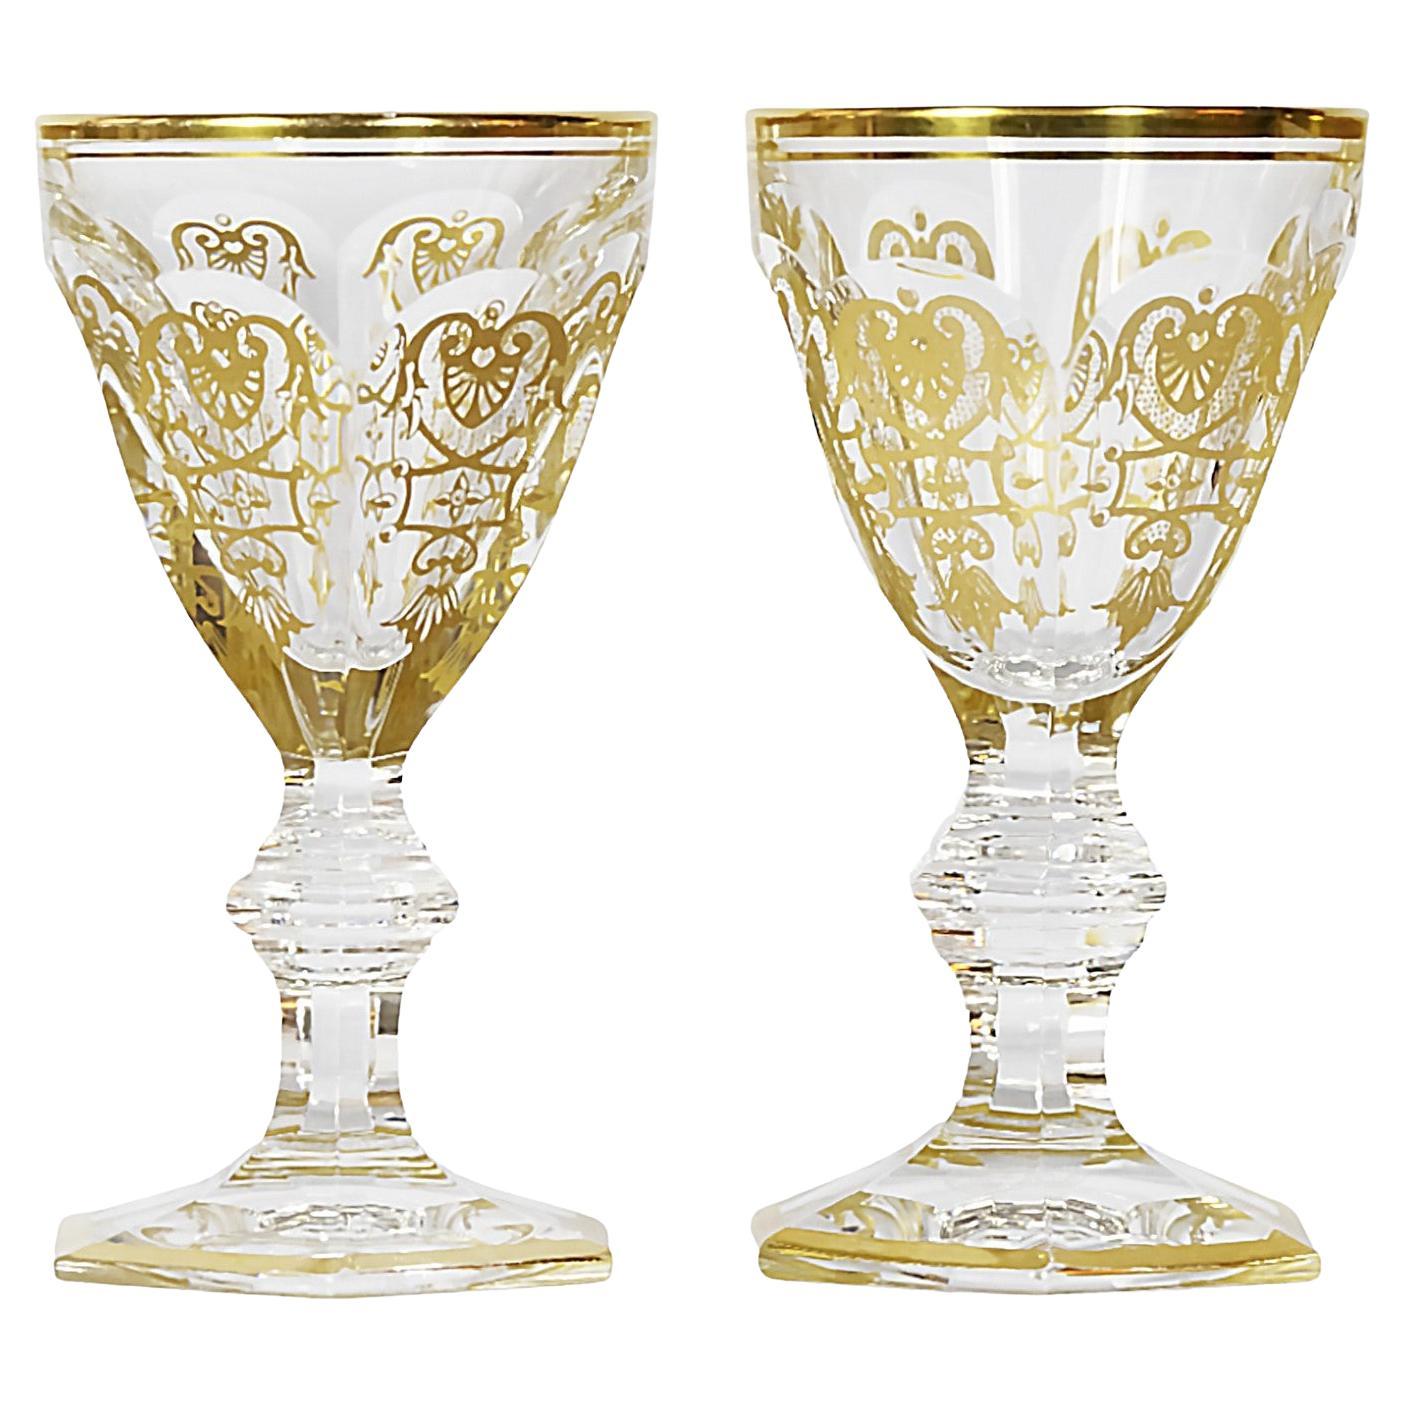 2 Pcs. Ensemble de verres en cristal de la collection Empire de Baccarat Harcourt